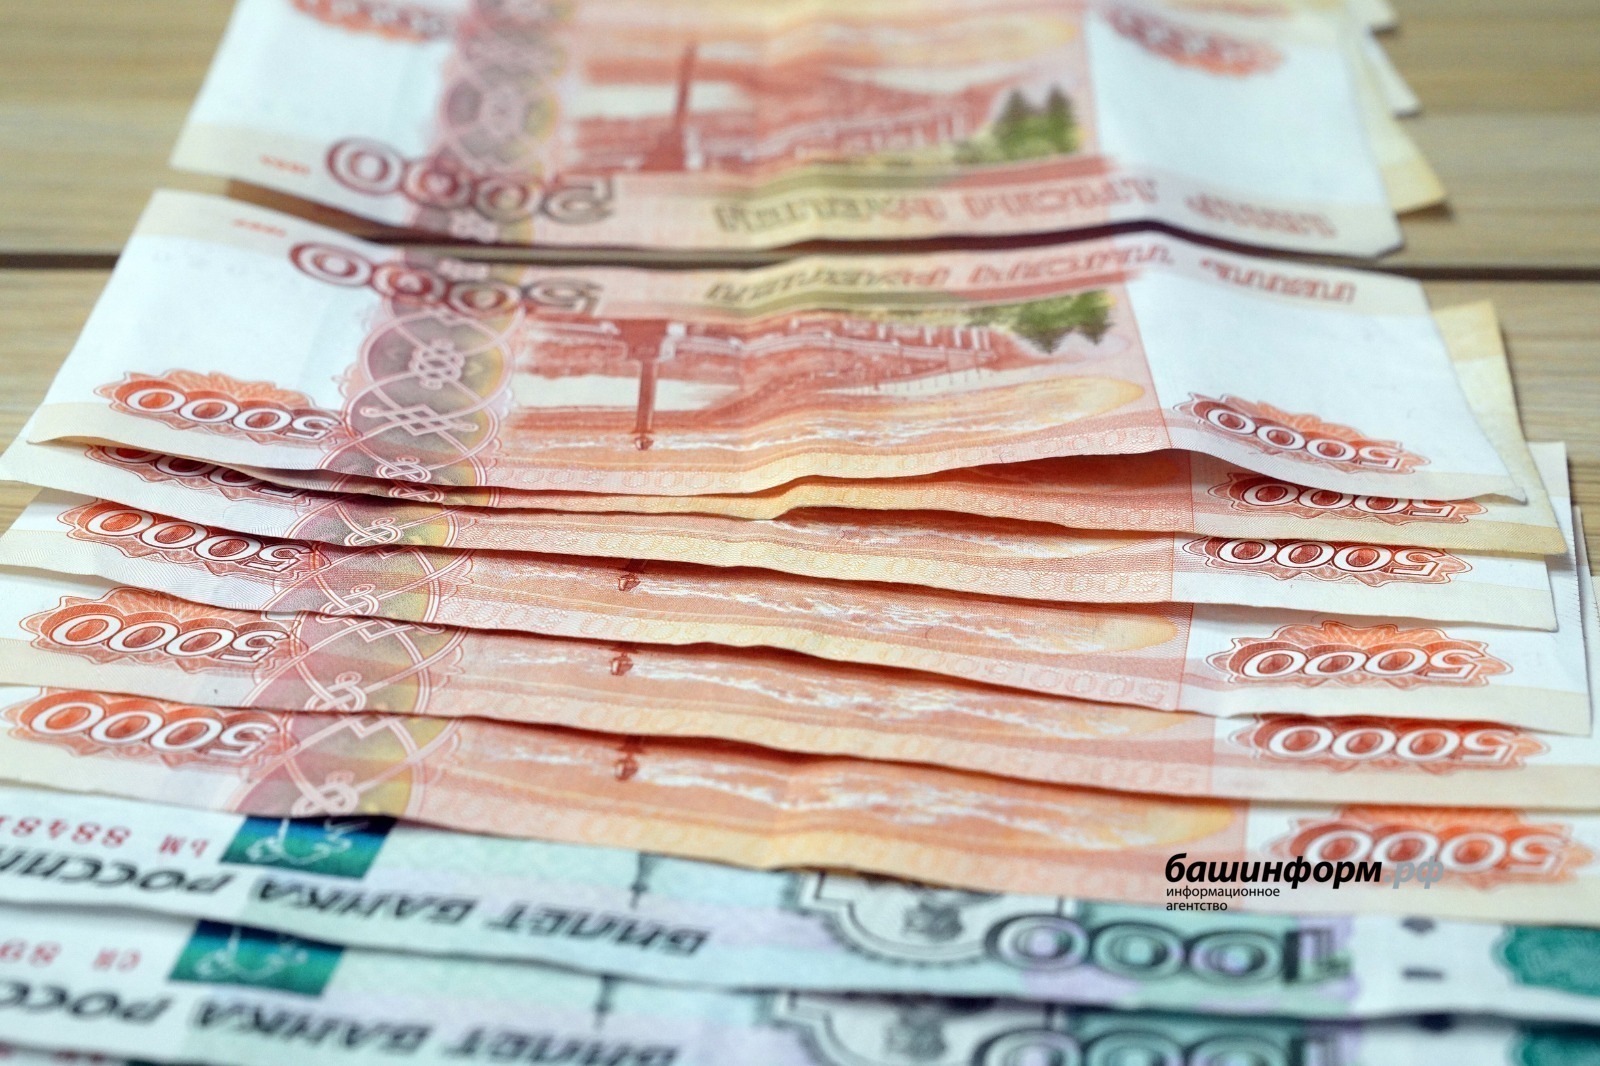 Пенсионерка из Башкирии выиграла 10 млн рублей и планирует купить квартиру